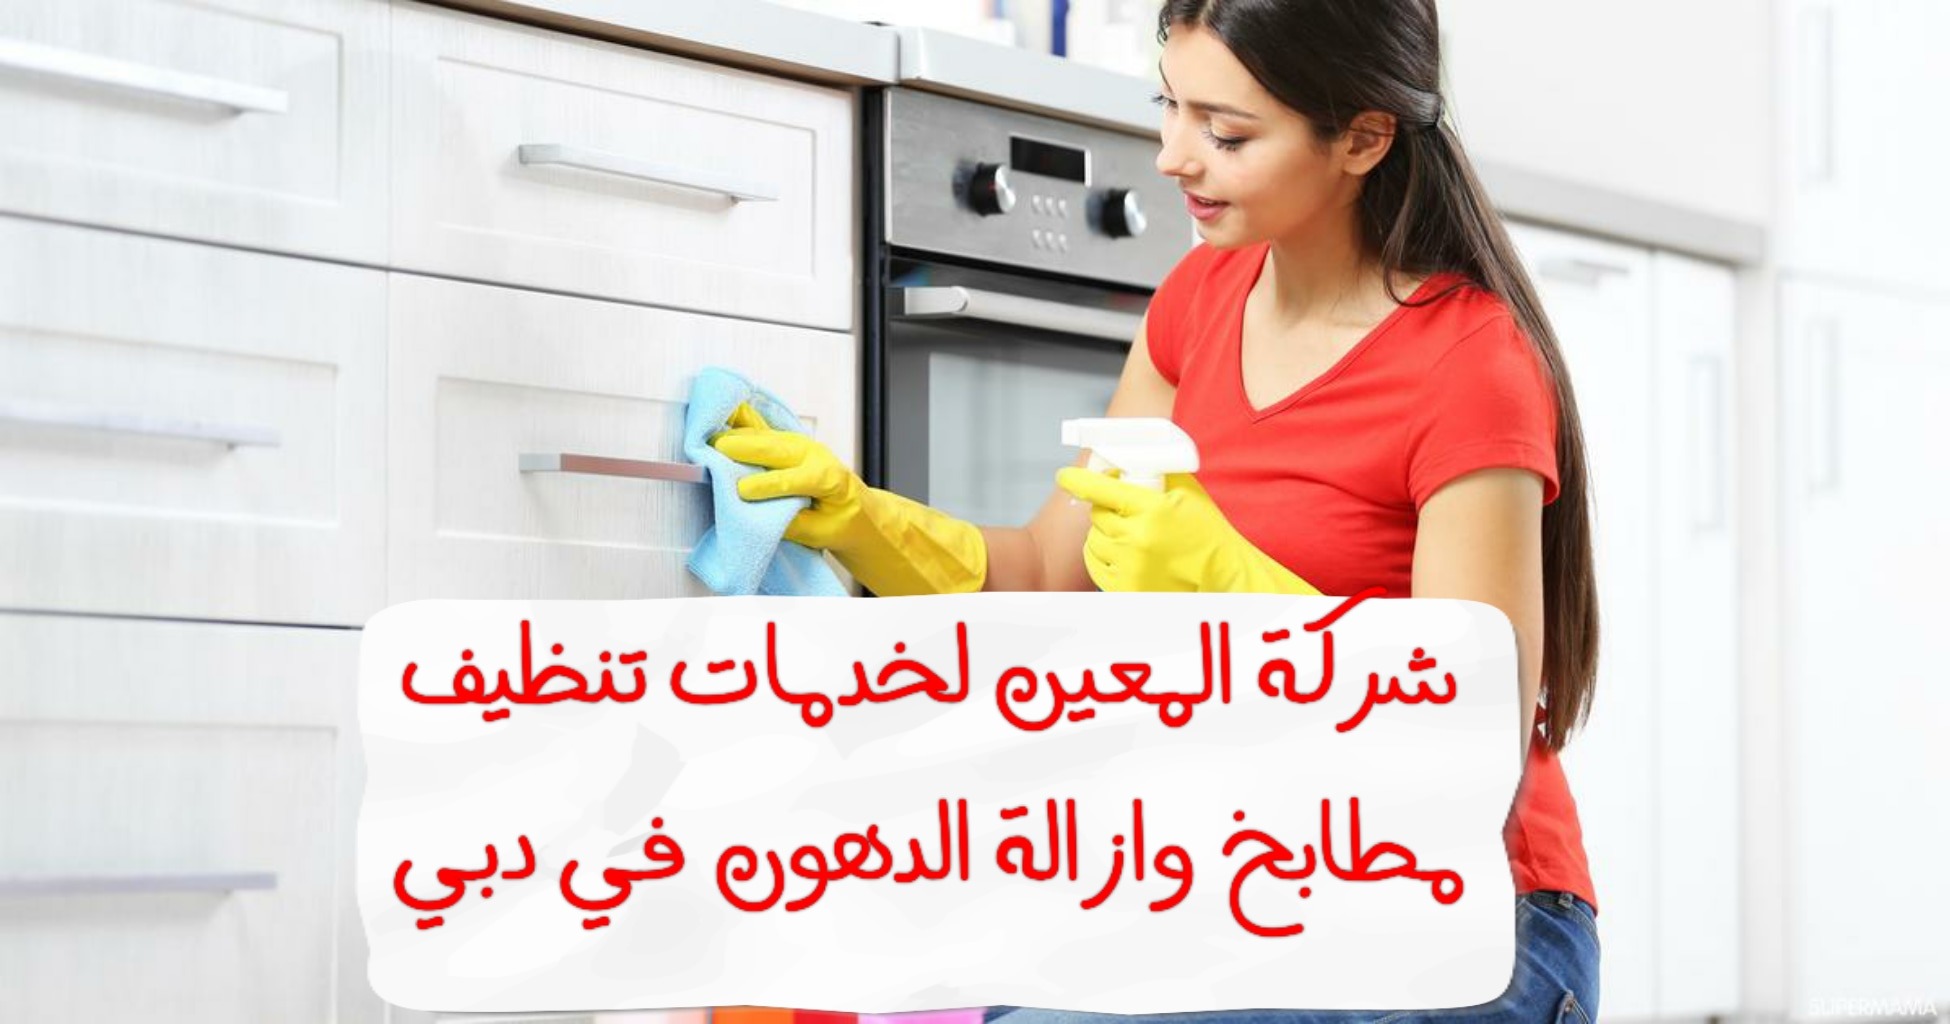 أفضل شركة تنظيف مطابخ و ازاله الدهون في دبي